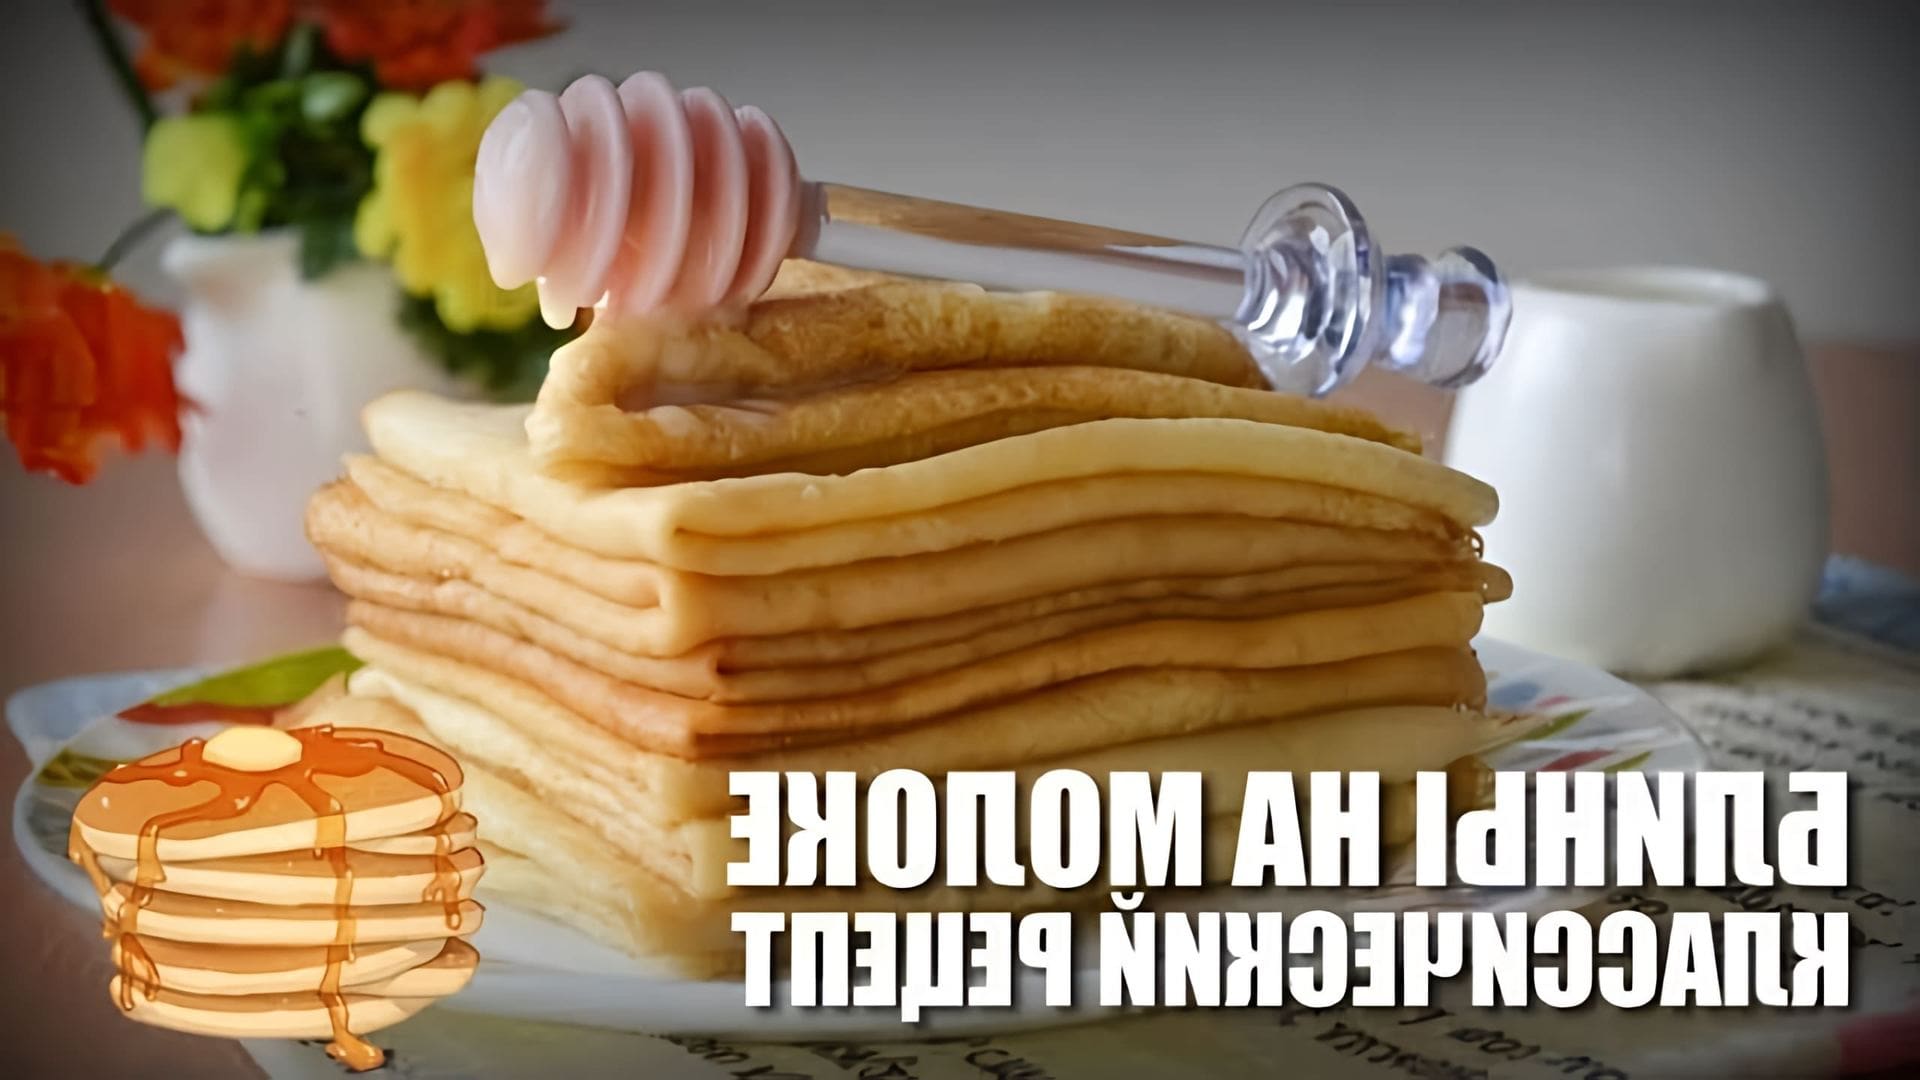 В этом видео демонстрируется рецепт приготовления классических блинчиков на молоке